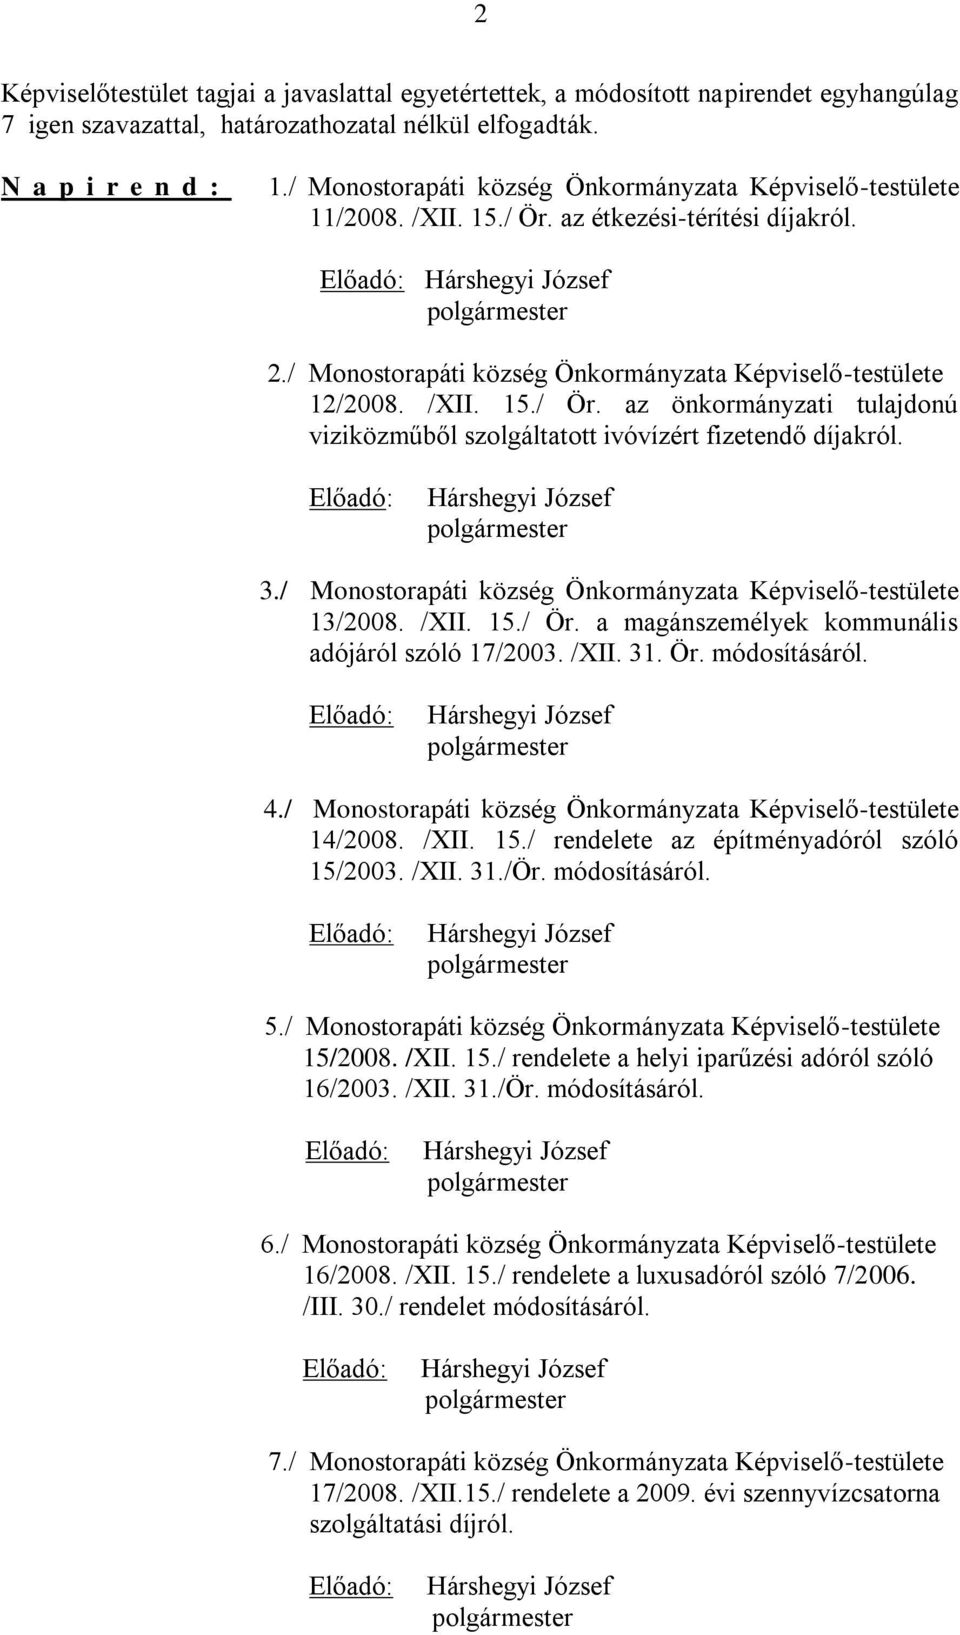 3./ Monostorapáti község Önkormányzata Képviselő-testülete 13/2008. /XII. 15./ Ör. a magánszemélyek kommunális adójáról szóló 17/2003. /XII. 31. Ör. módosításáról. 4.